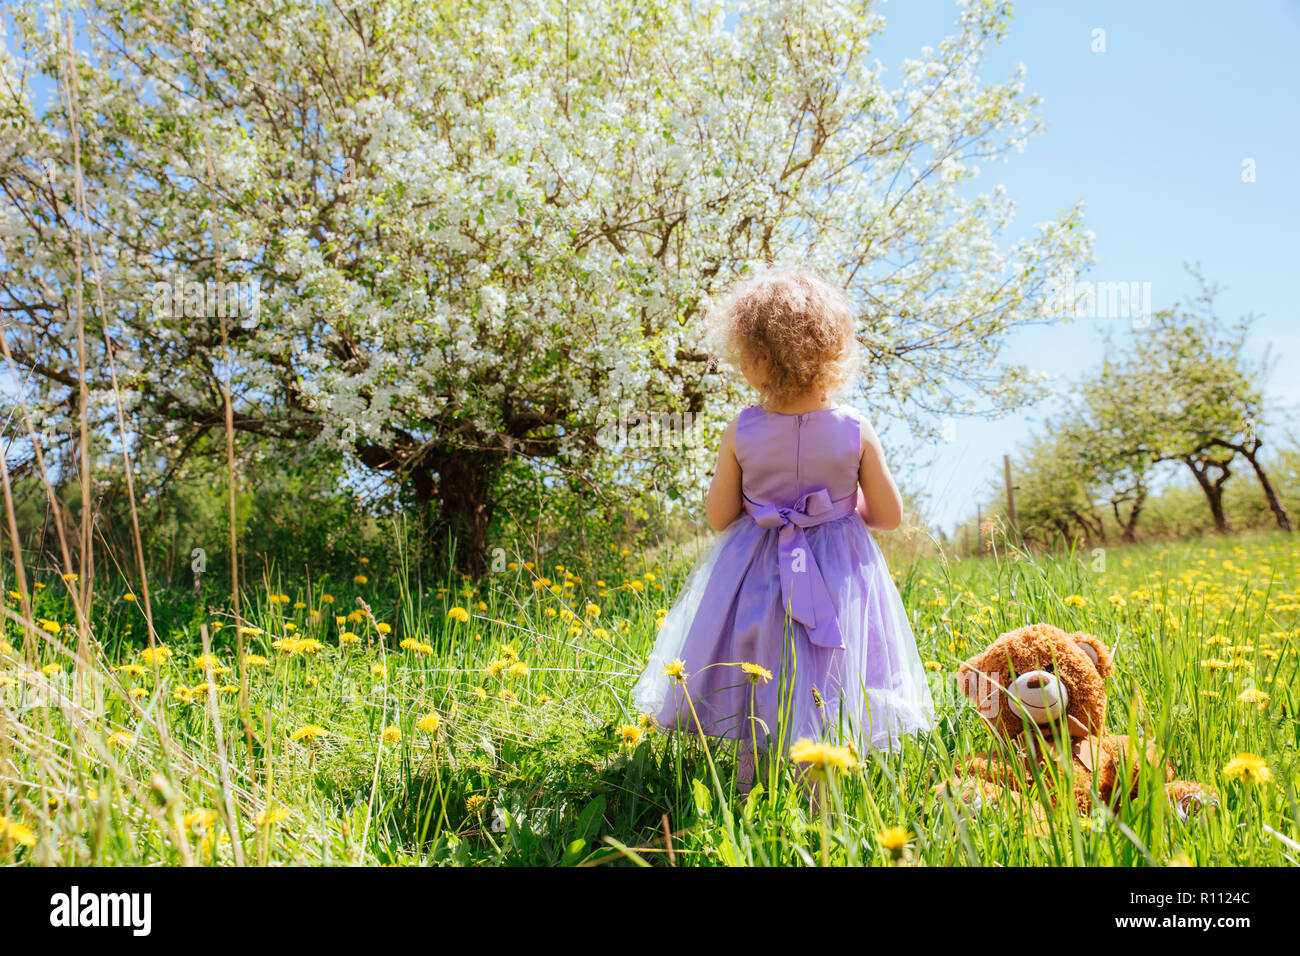 Junge Mädchen in lila Party Kleid bewundern herrlich blühender Apfelbaum külschrank in Grün, Löwenzahn um Sie neben ihr Lieblings Stofftier. Stockfoto